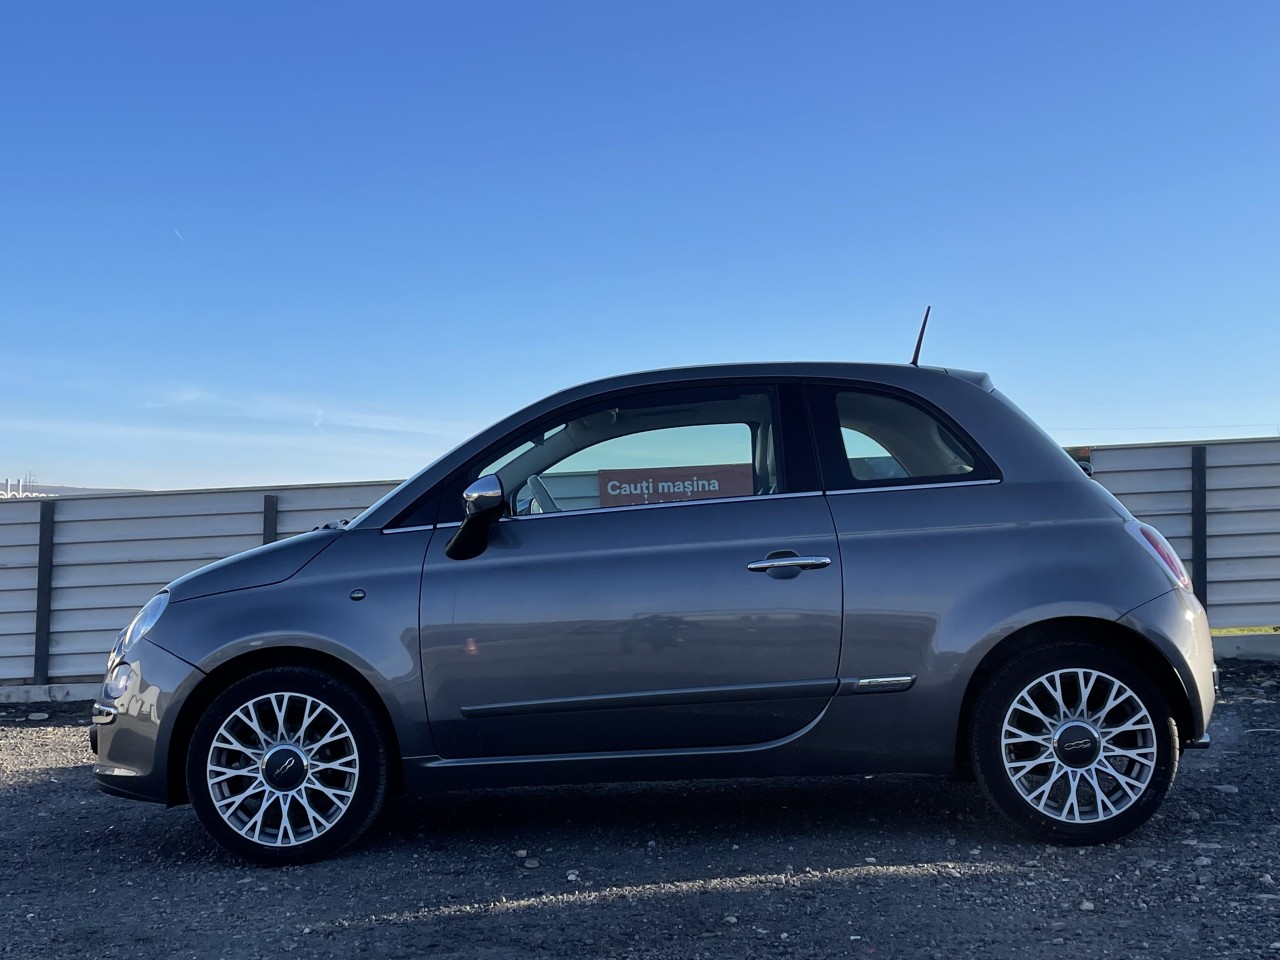 Fiat 500 1.2i 69 CP euro 5, 43985 km 2015 2015